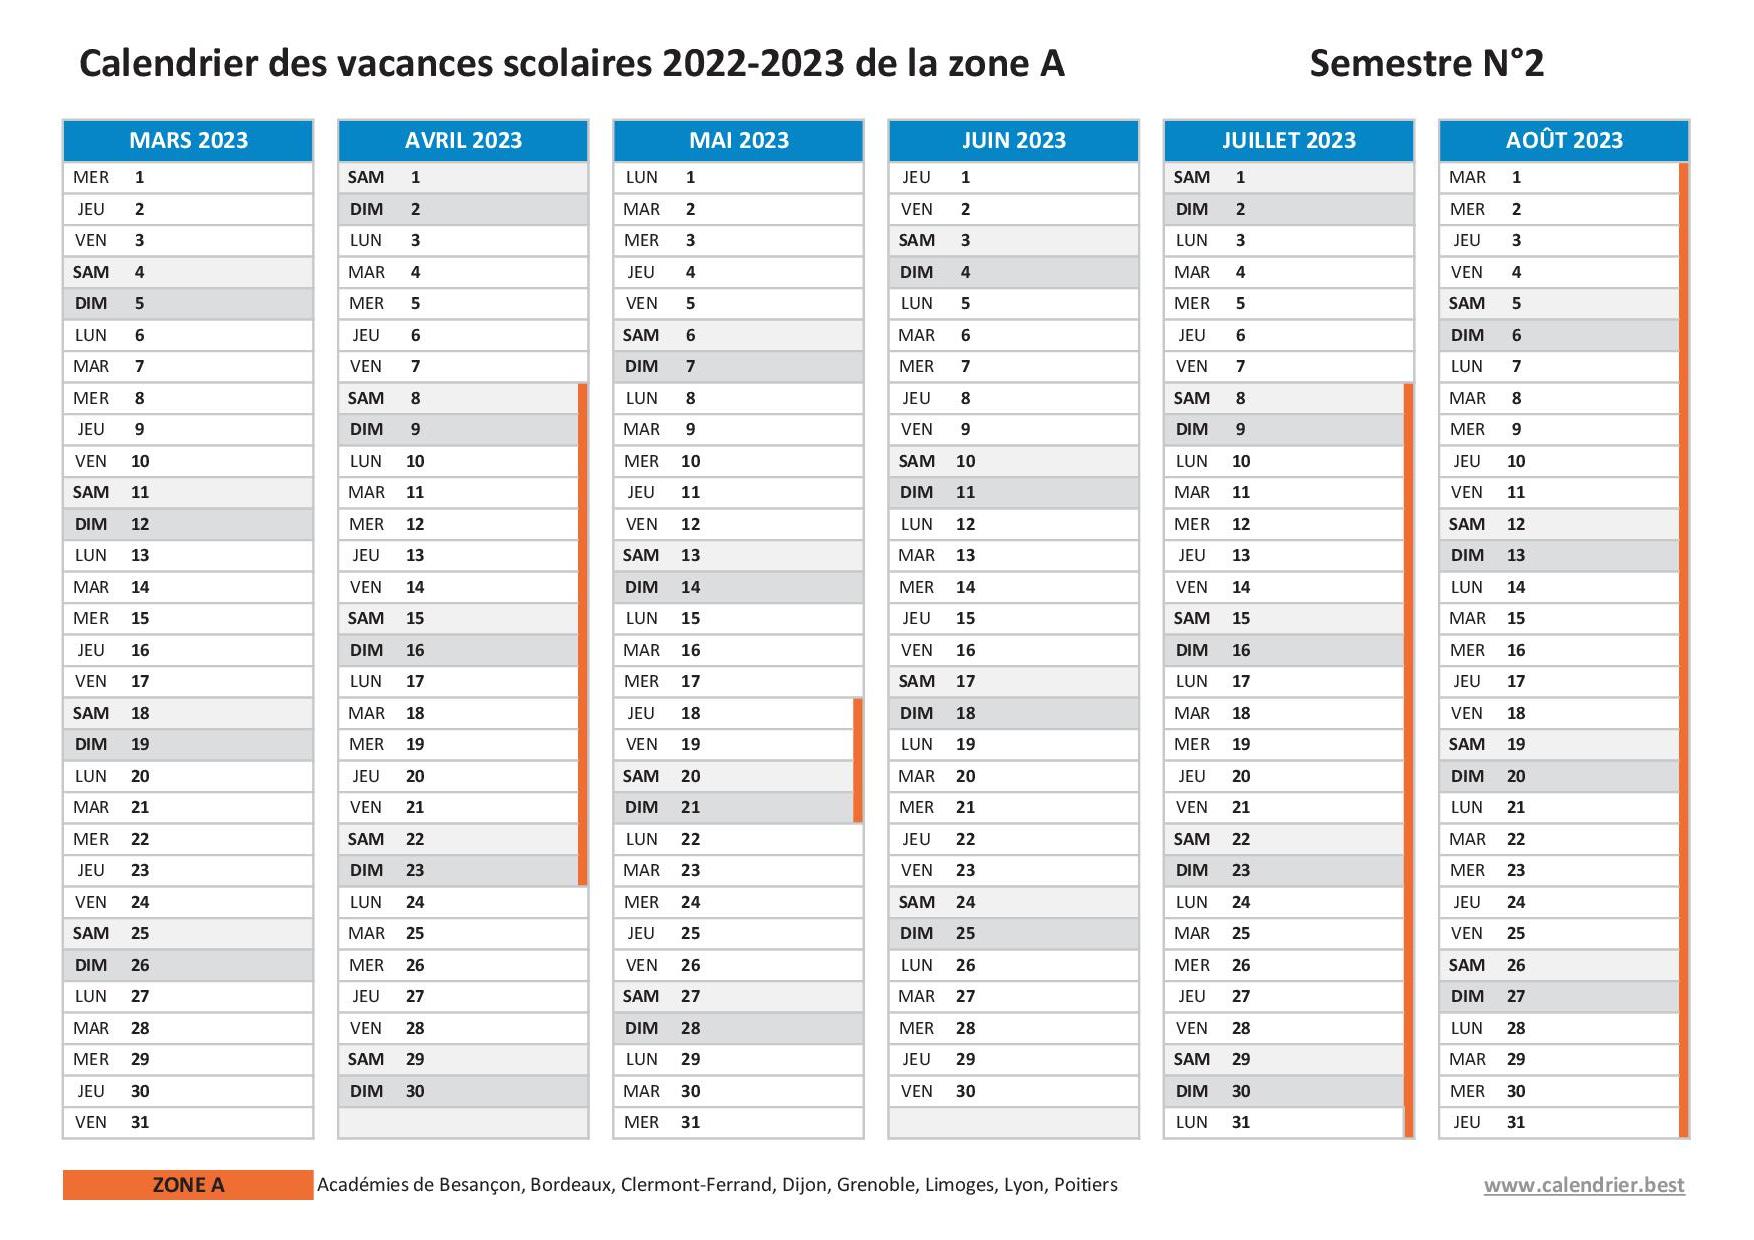 Vacances scolaires 2022 2023 Grenoble : dates et calendrier scolaire  2022-2023